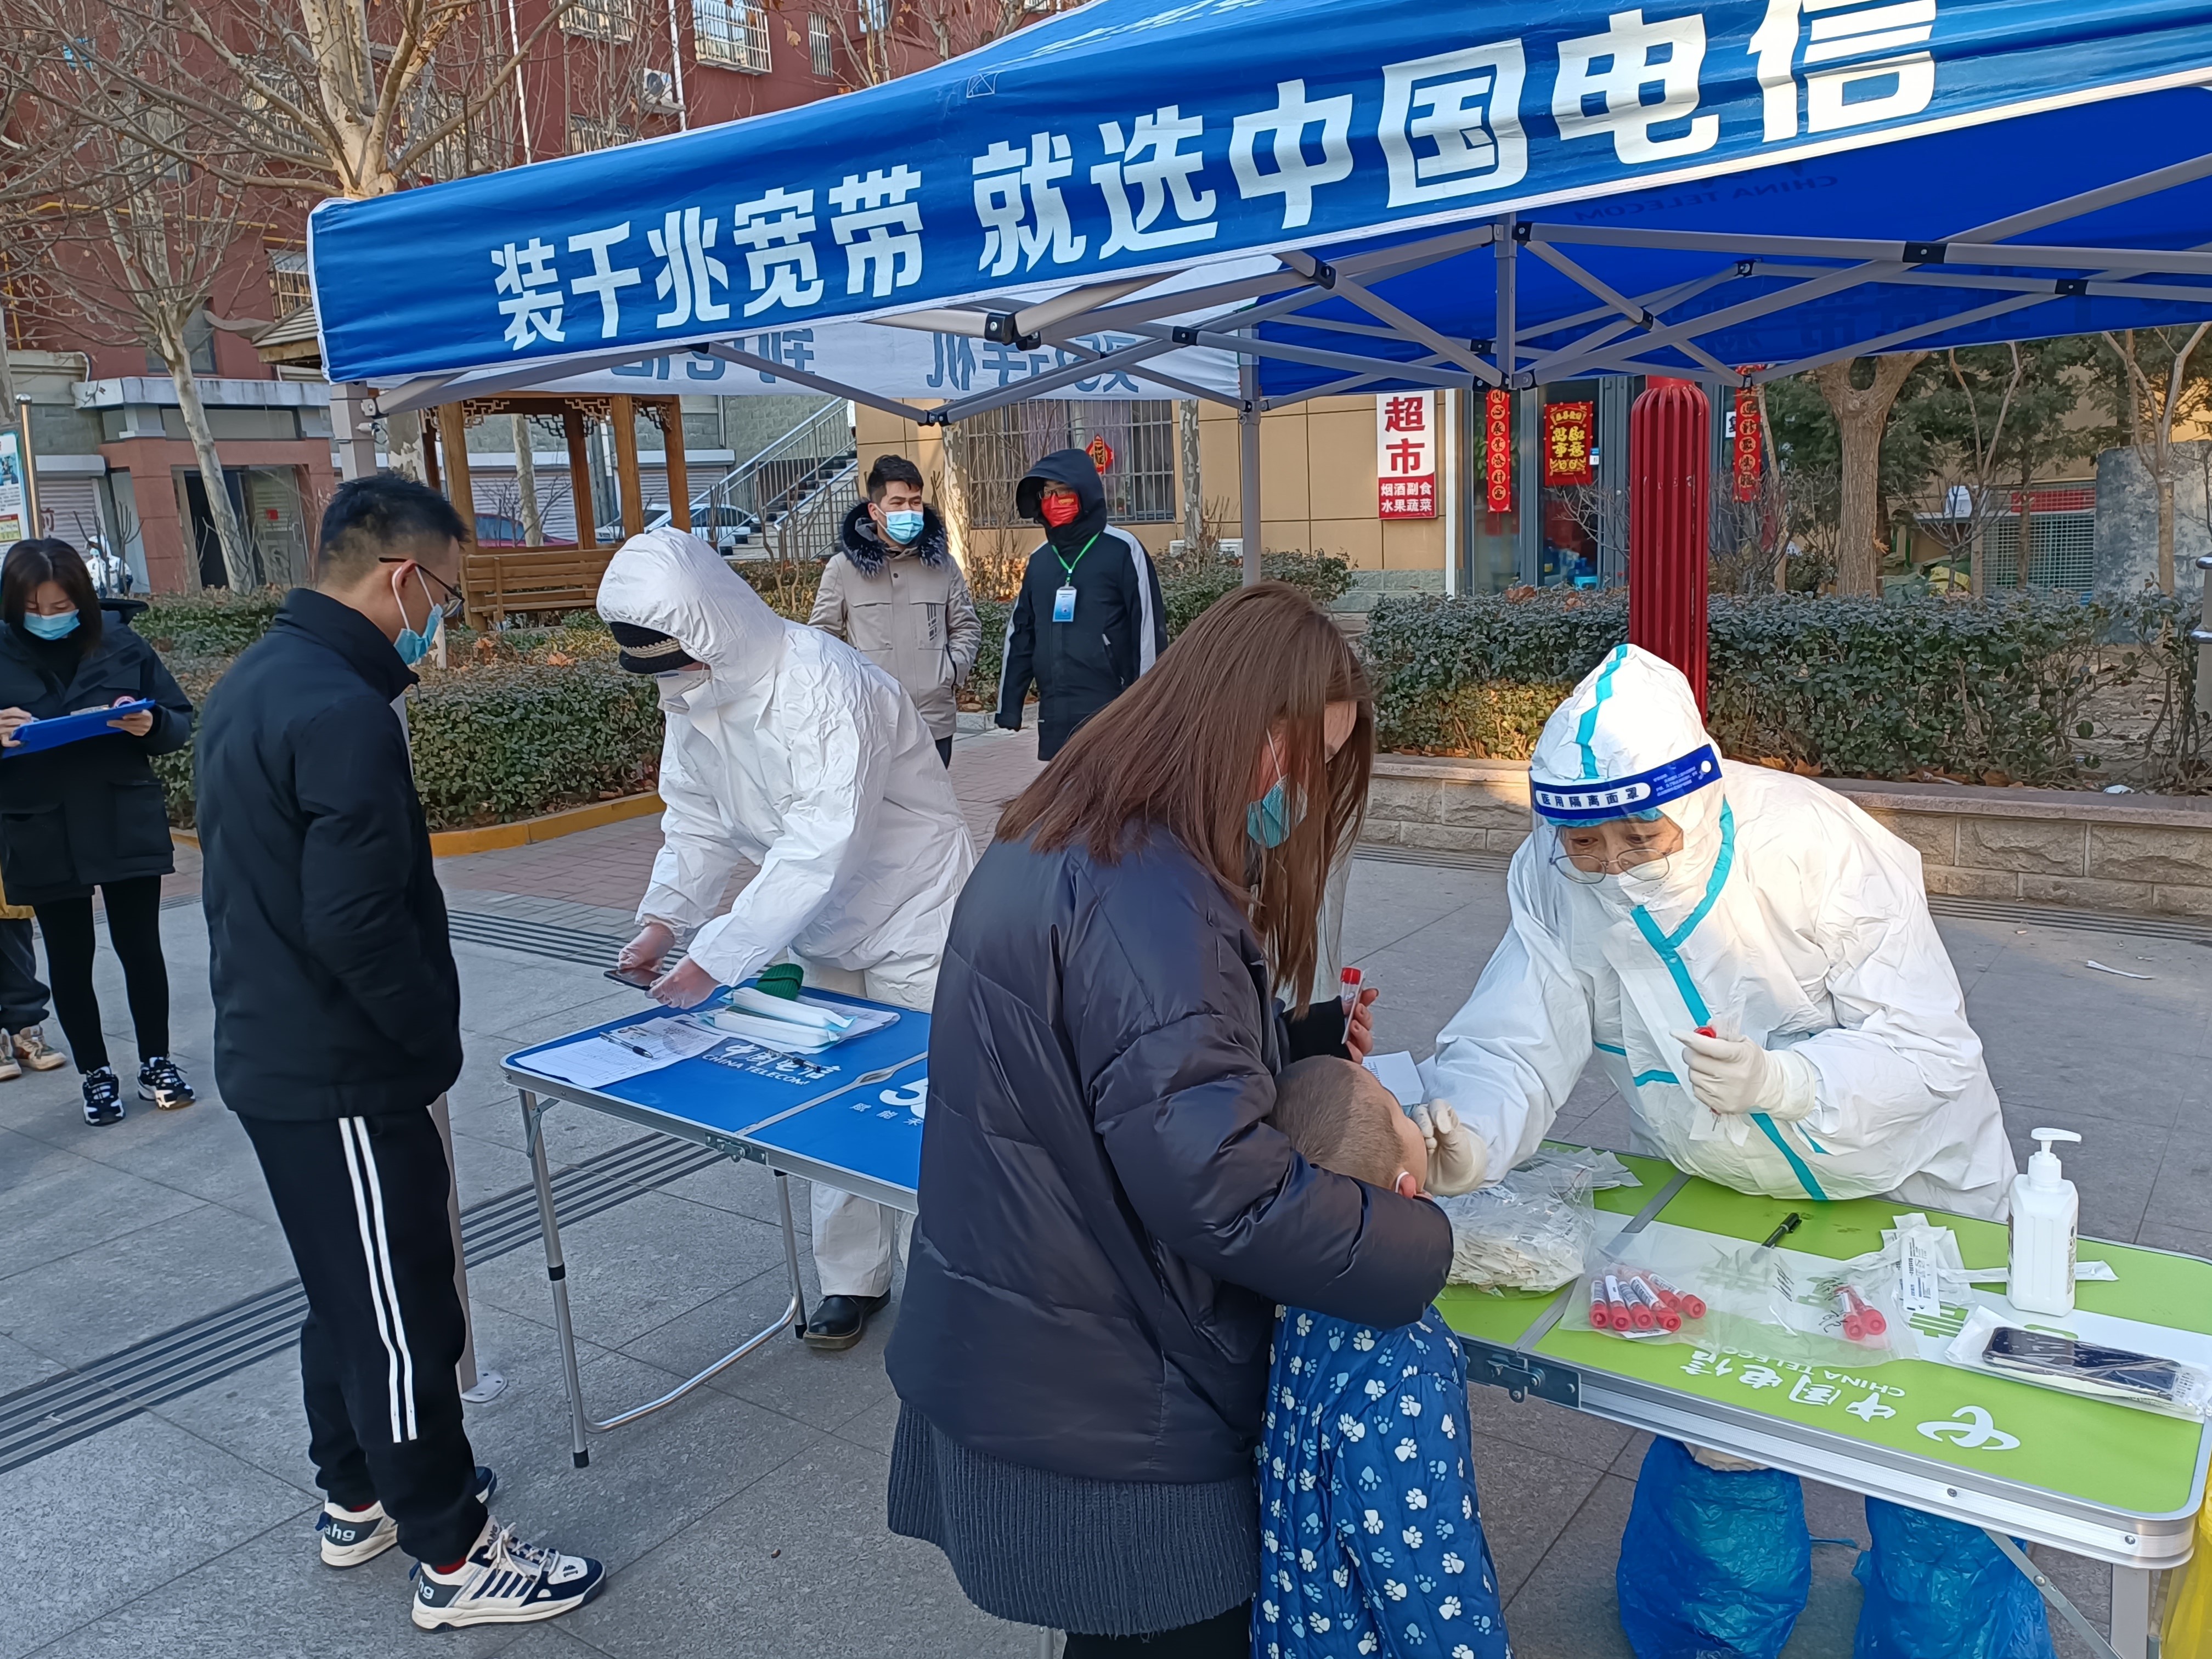 1月31日,河北省衡水市故城区发现新冠肺炎确诊病例,疫情防控形势空前